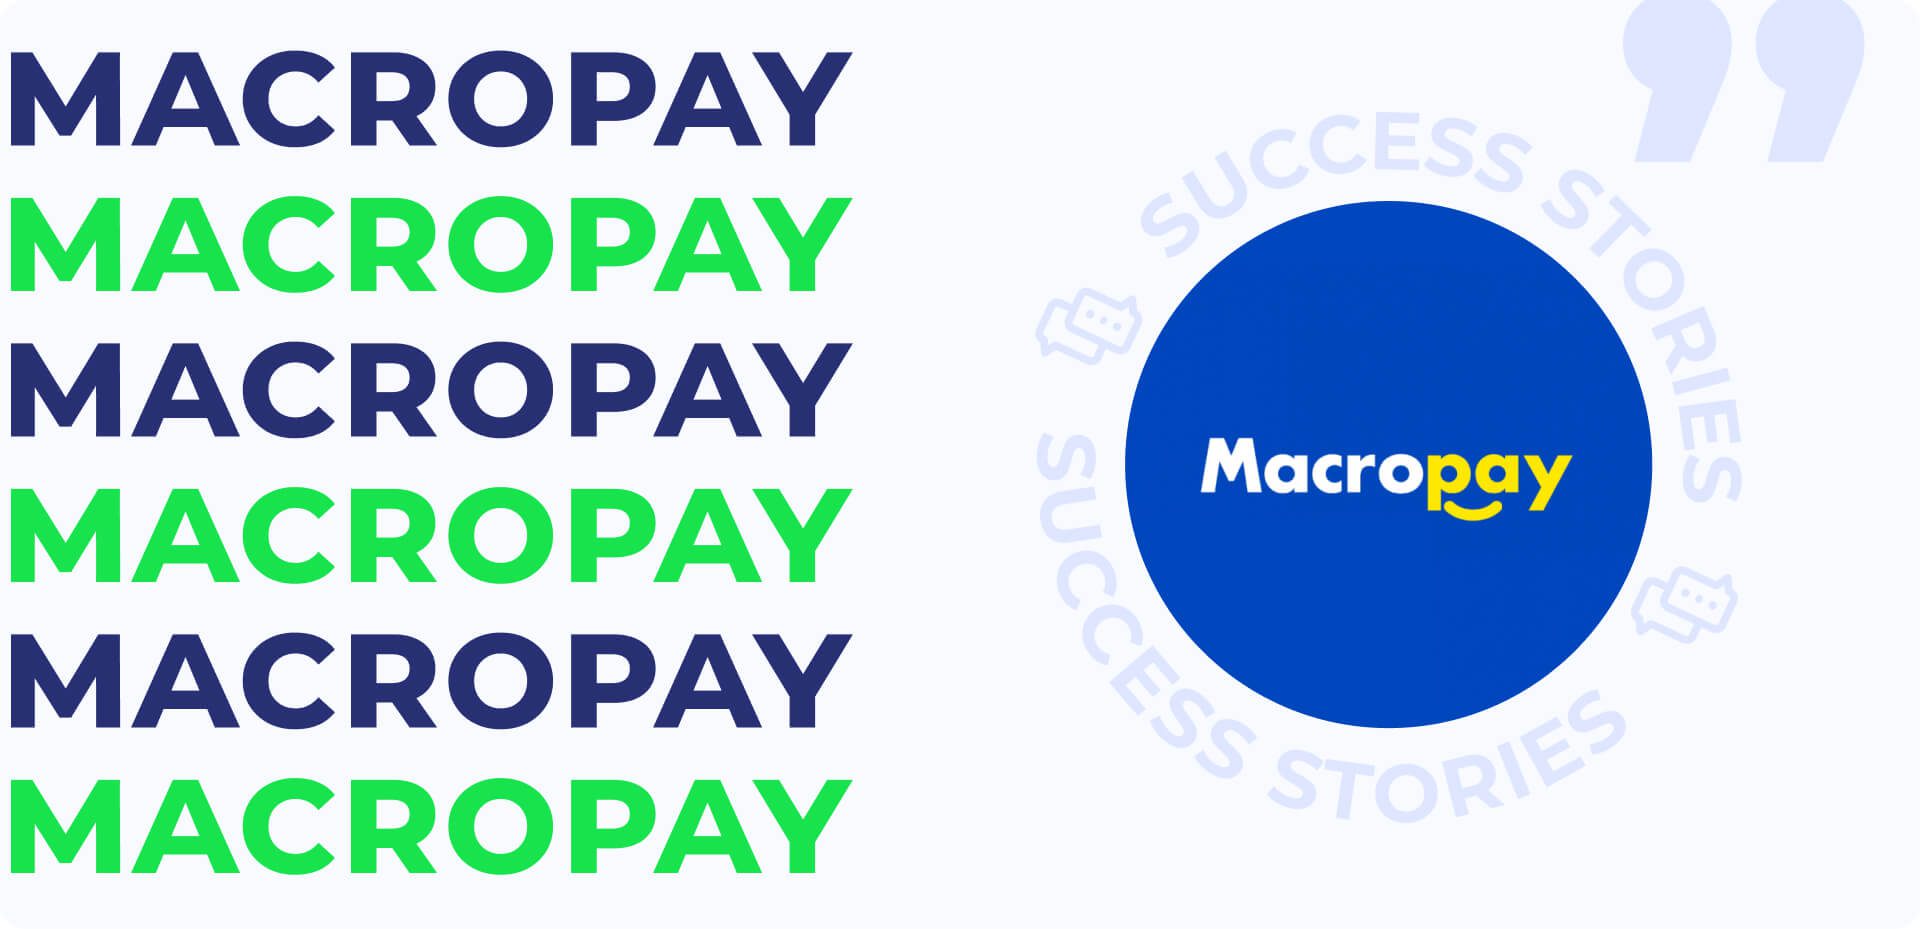 Macropay: escalando sus operaciones con el apoyo de Fairplay